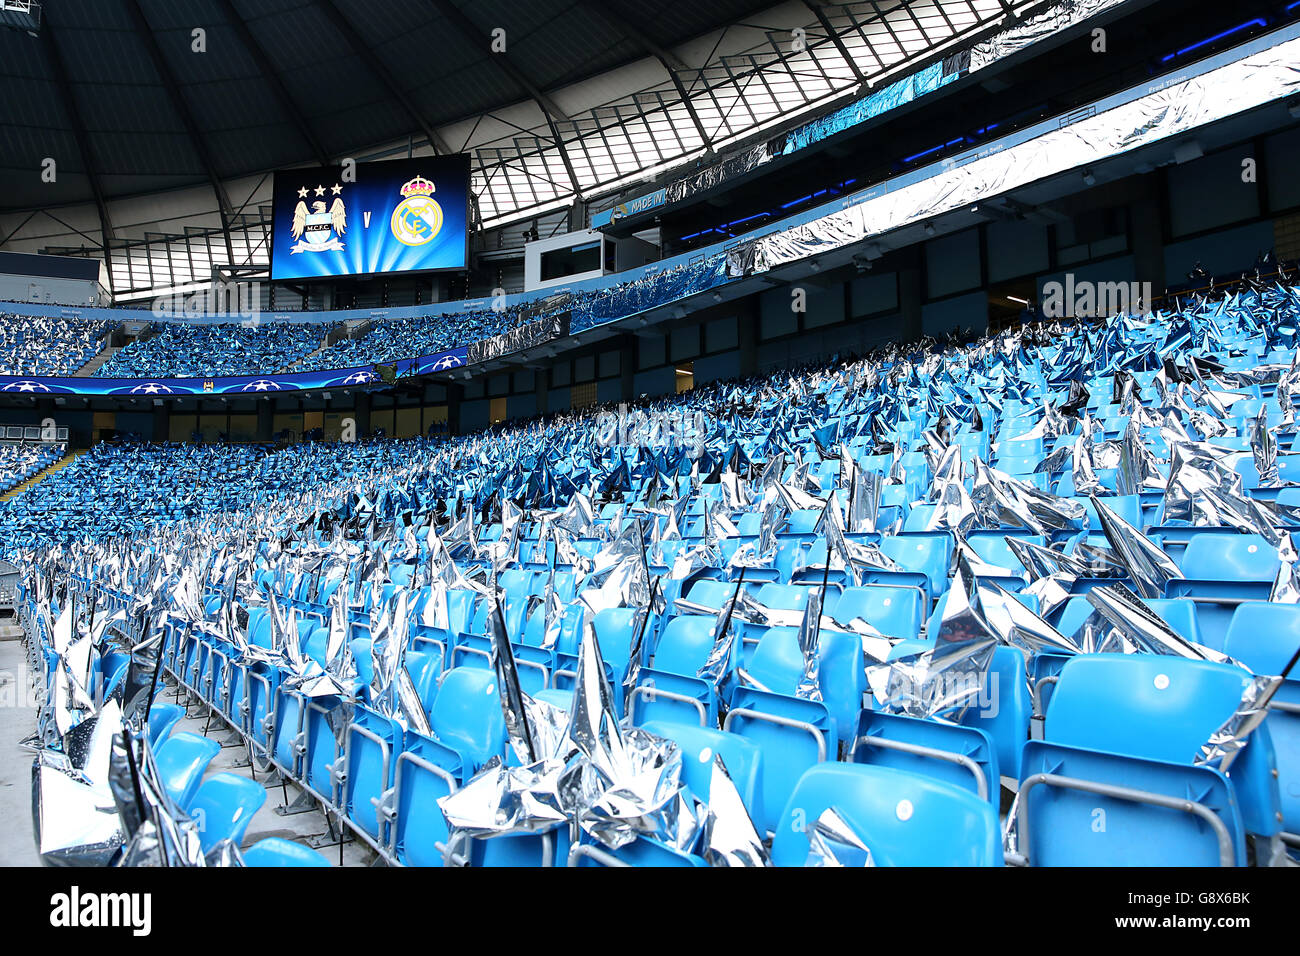 Vue générale des sièges avant le match de demi-finale de l'UEFA Champions League au Etihad Stadium de Manchester. Banque D'Images